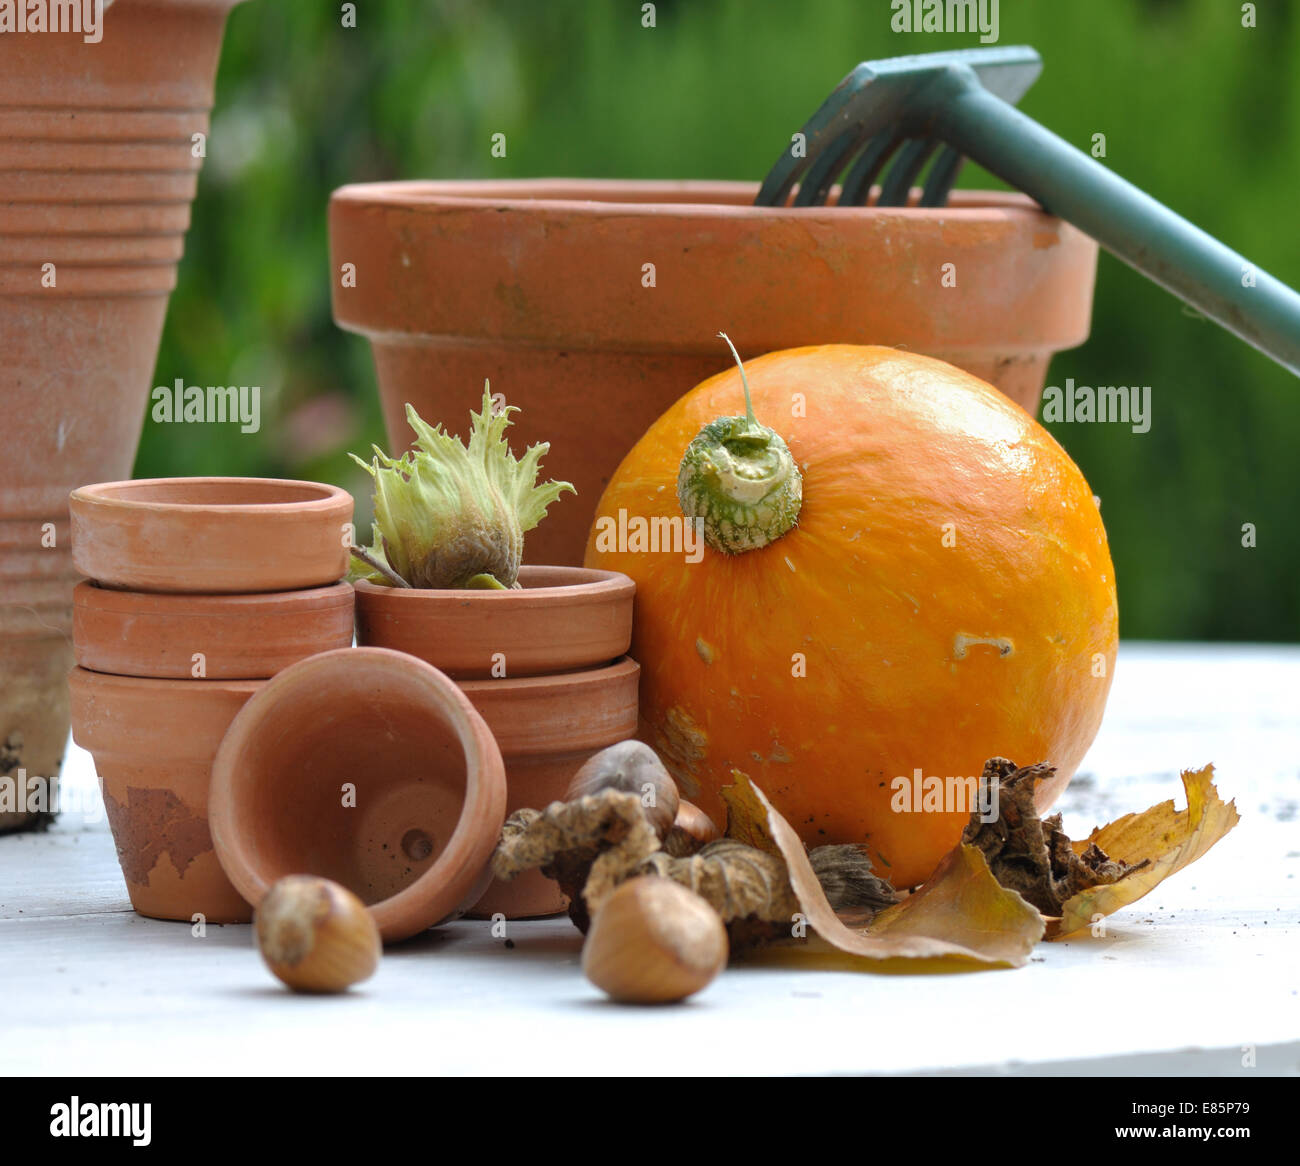 Potiron, noisettes et de feuilles mortes recueillies parmi les pots de terre cuite Banque D'Images